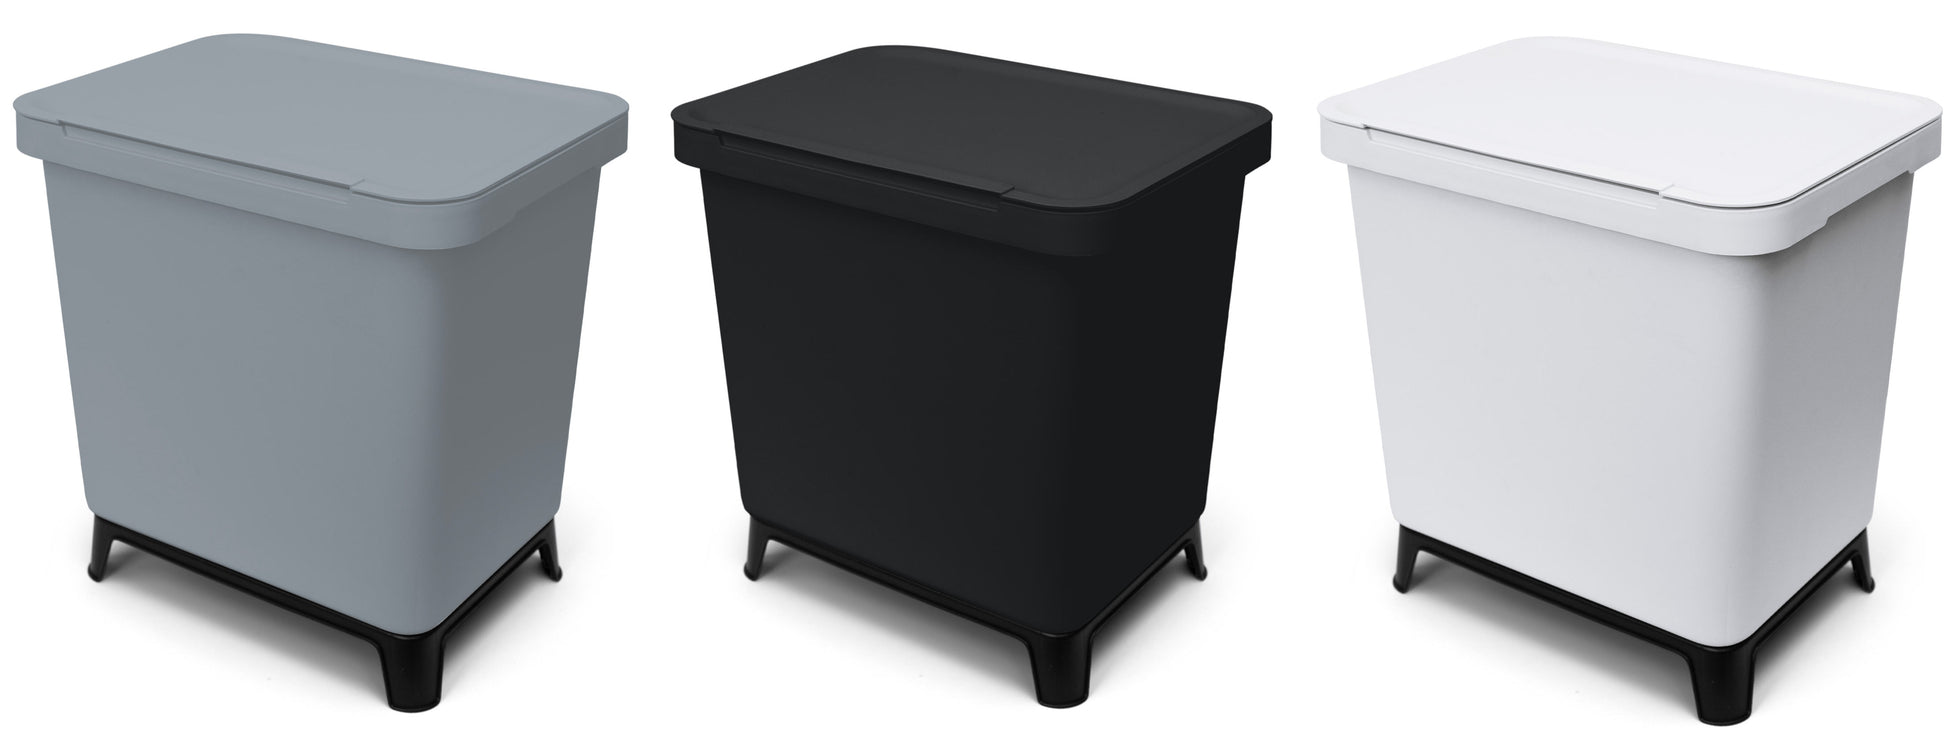 Drei YourCasa® Mülleimer 2-4 Fächer [20-40L] im exklusiven Design – Mülltrennsystem mit Deckel und Fuß, platziert auf weißem Hintergrund.